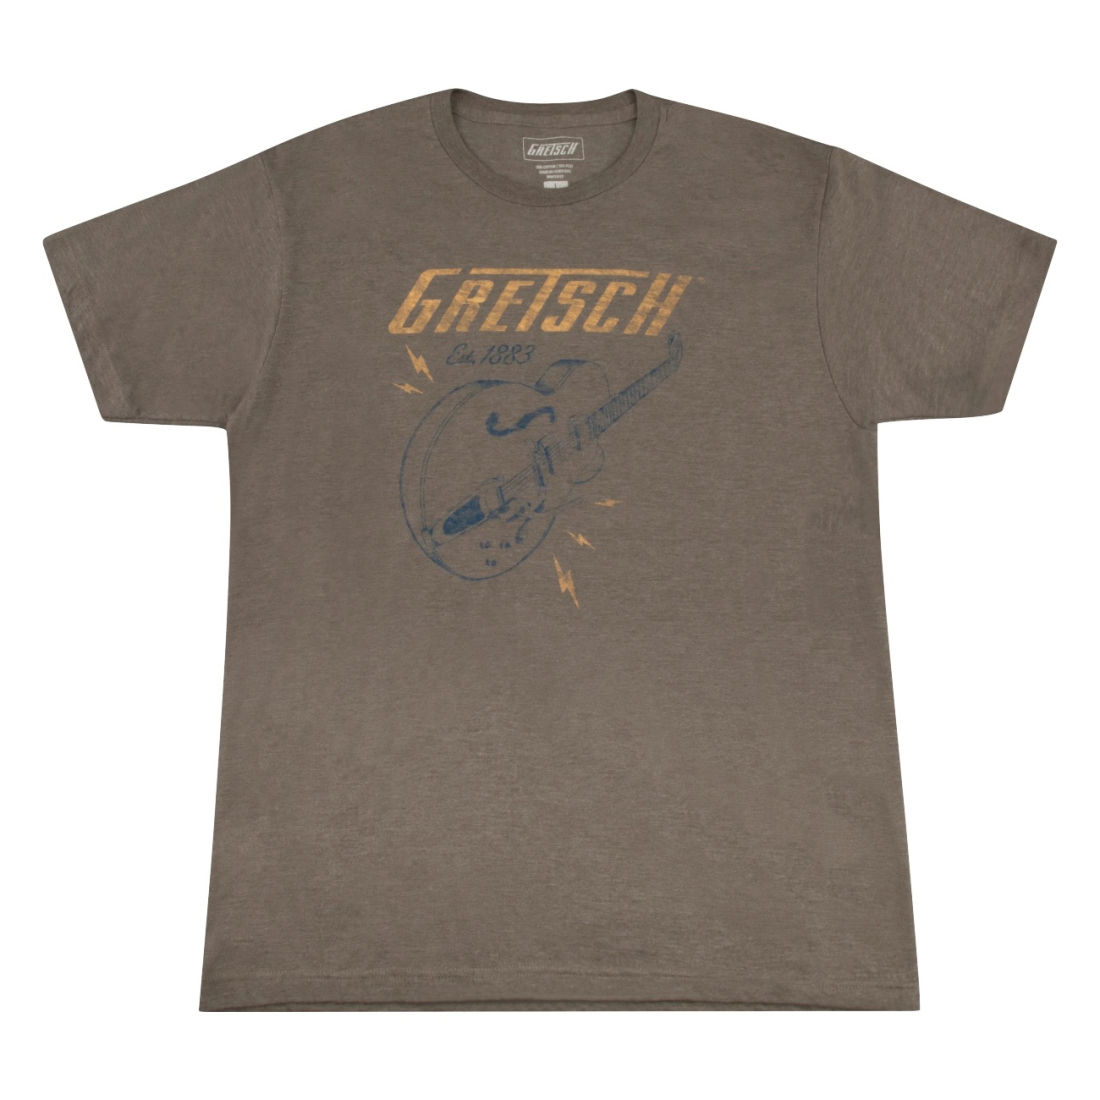 Lightning Bolt T-Shirt in Brown - Medium